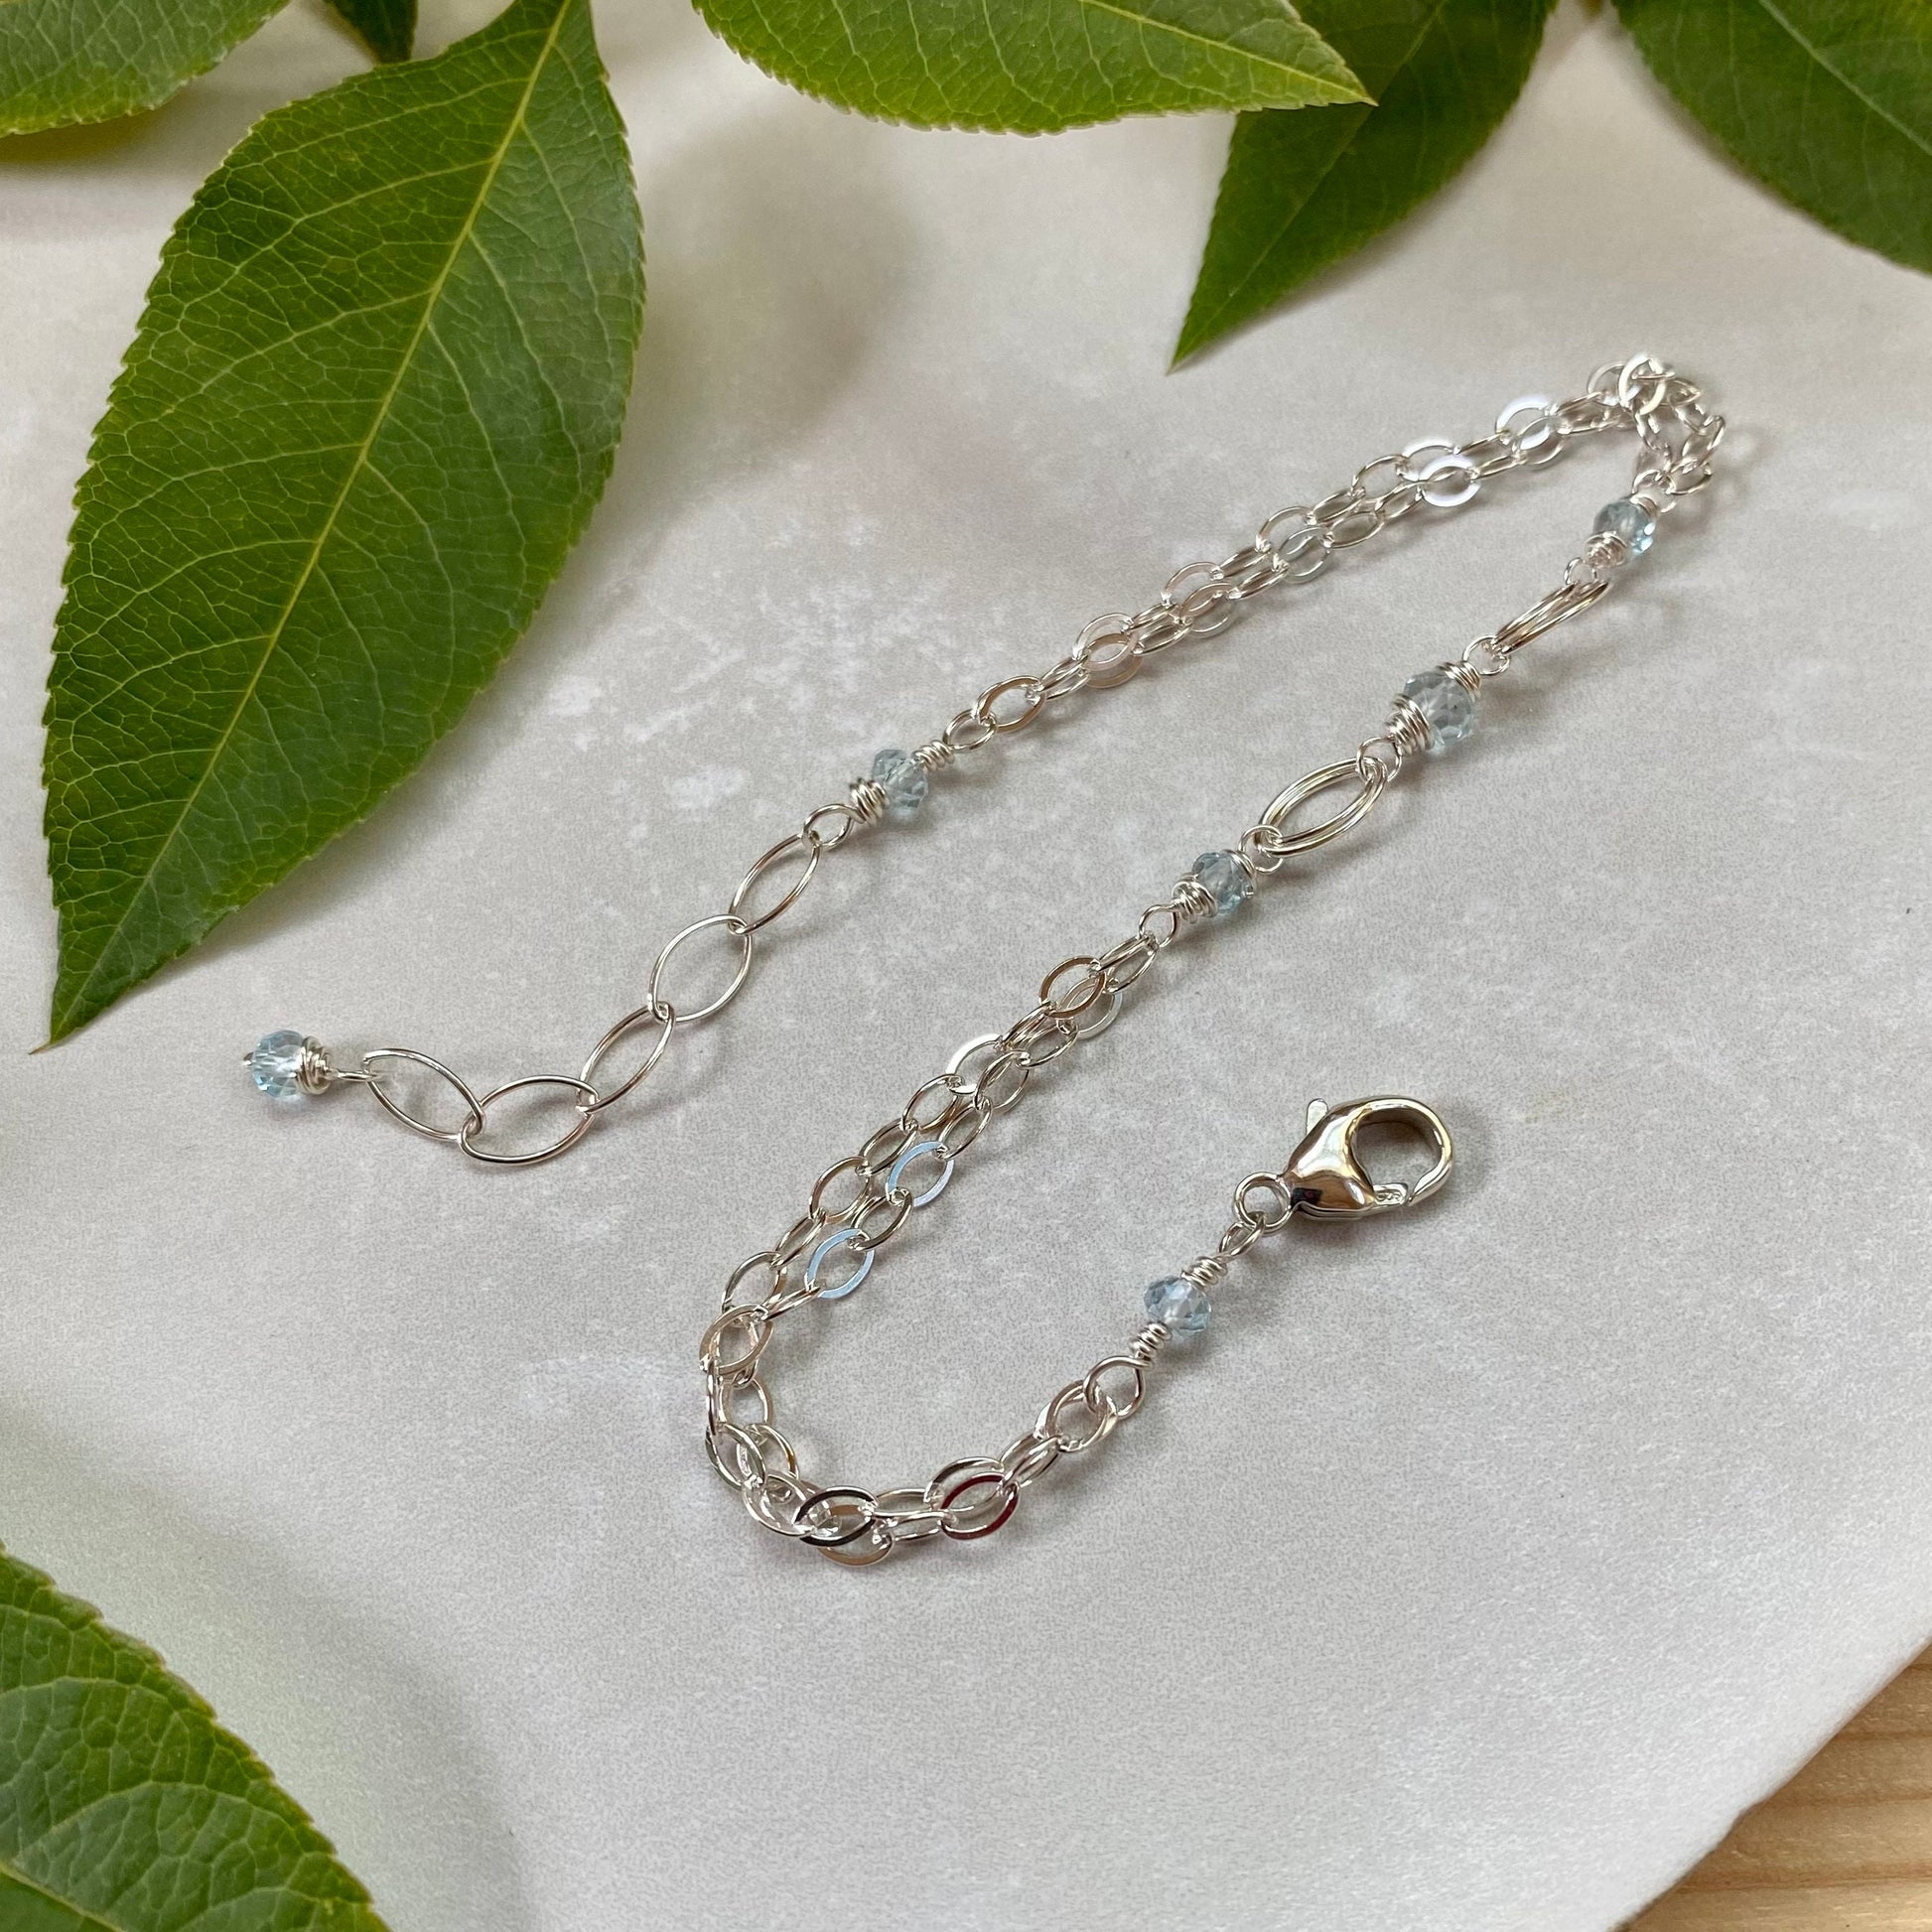 Blue Topaz Bracelet, Sterling Silver Beaded Blue Gemstone Birthstone, Elegant Bohemian Birthday Gift for December